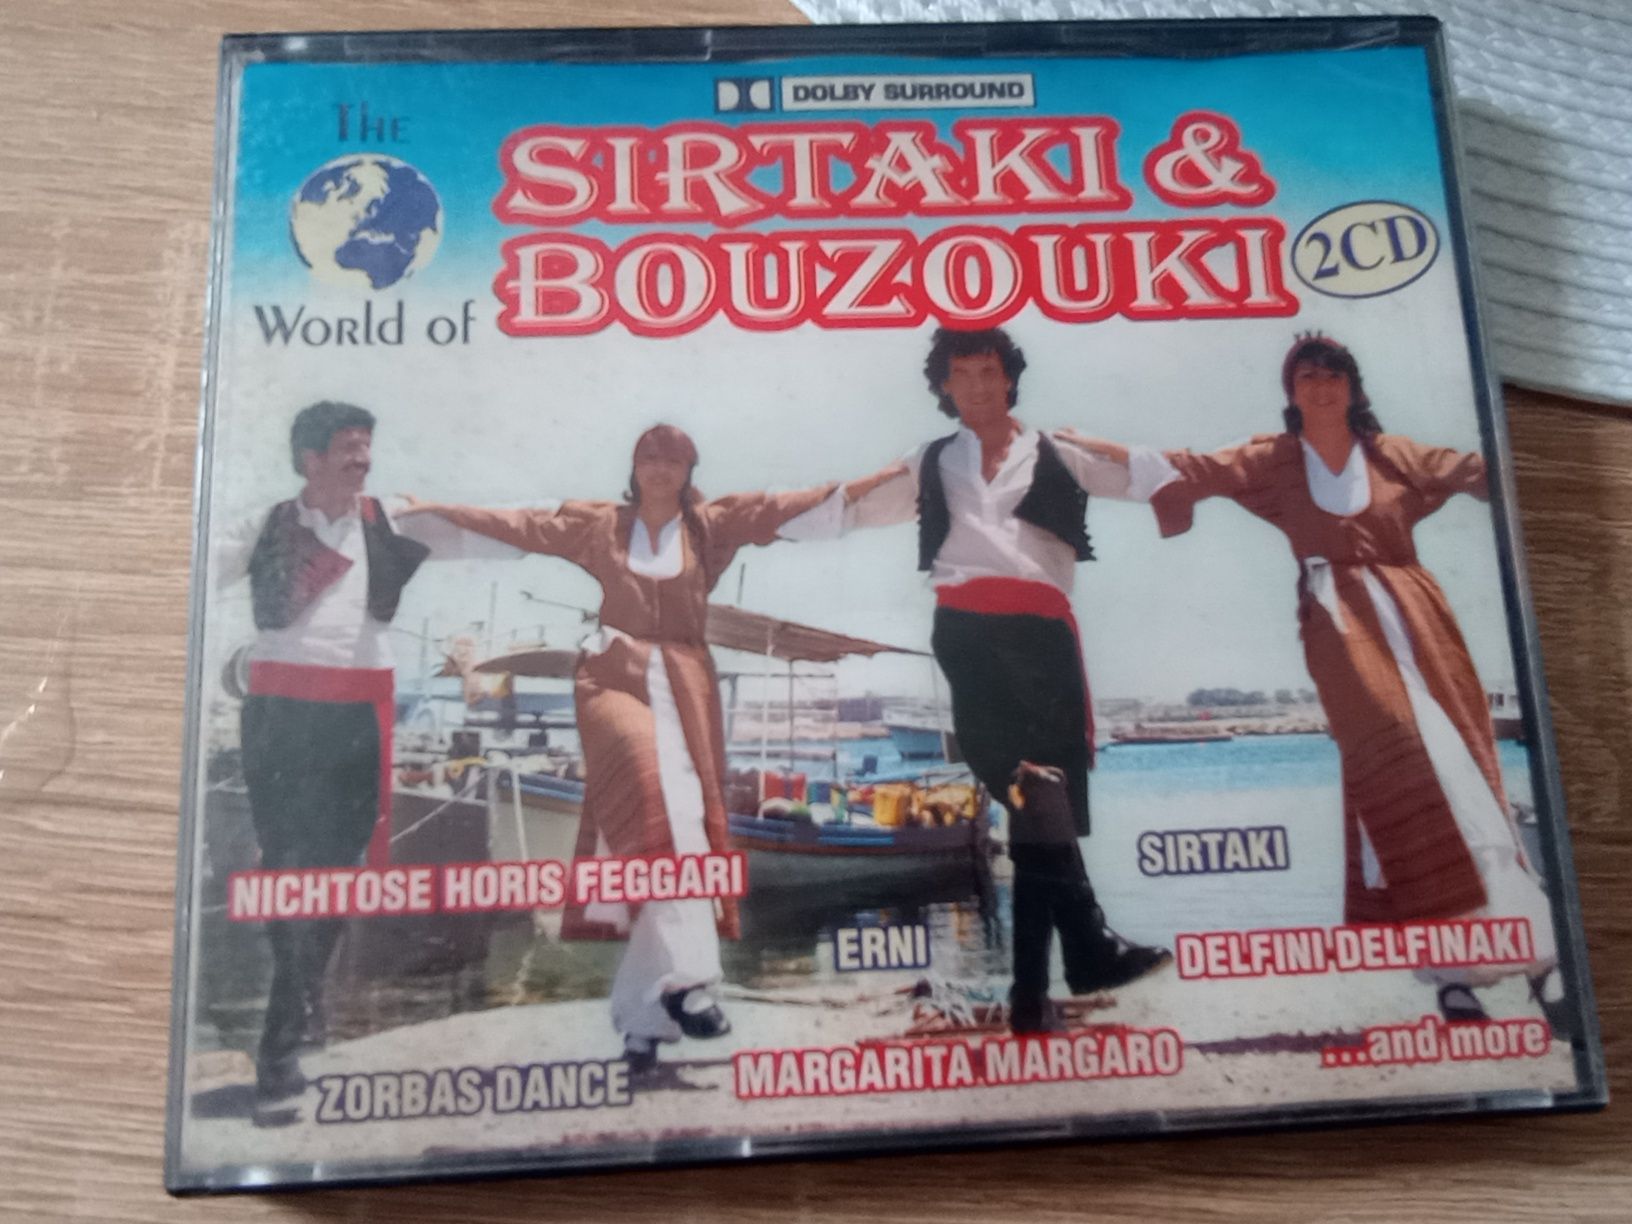 The world of Sirtaki & Bouzouki 2 CD